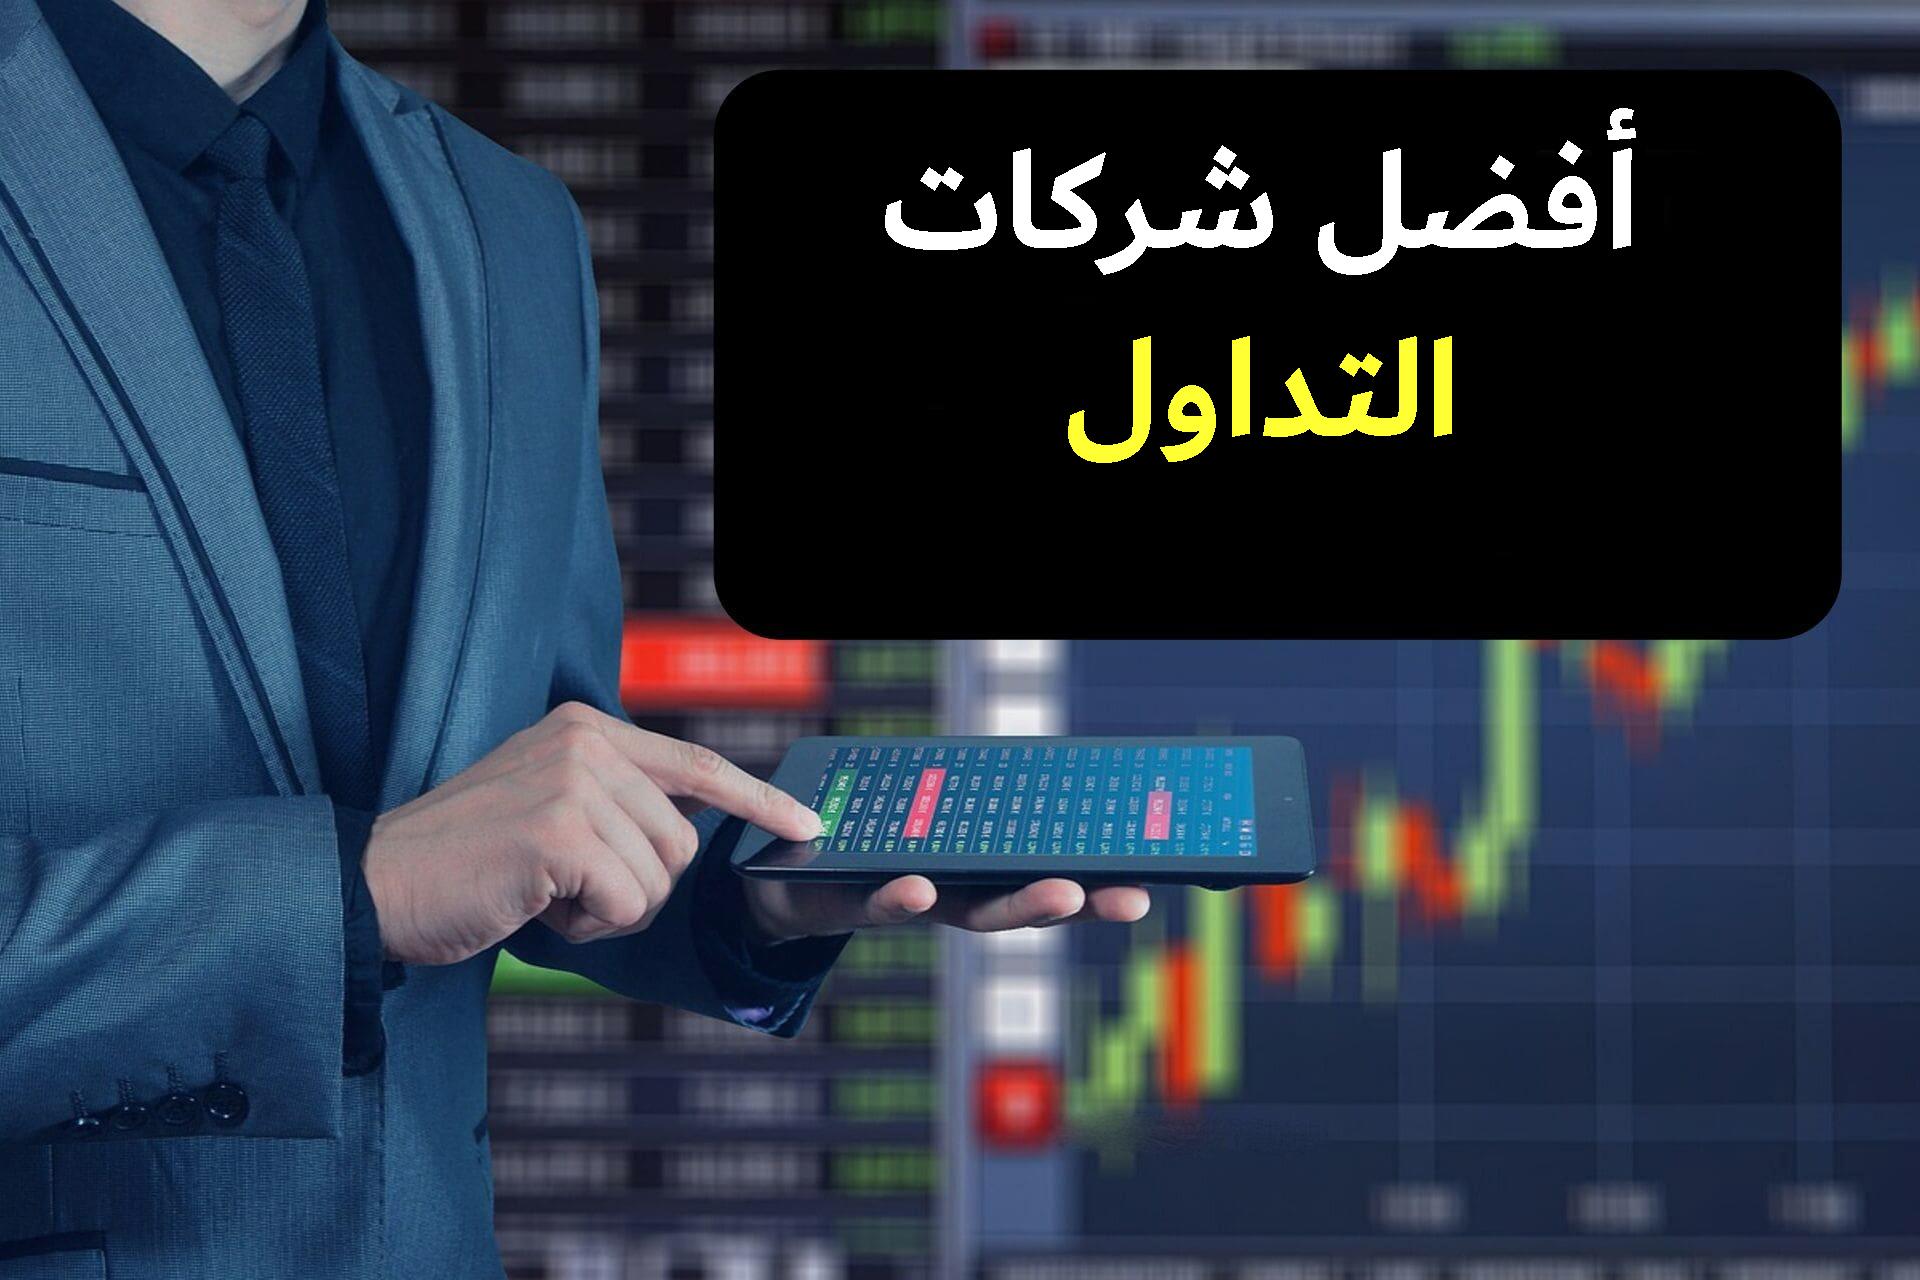 ما هي طبيعة تداول العملات الرقمية في السعودية اليوم؟